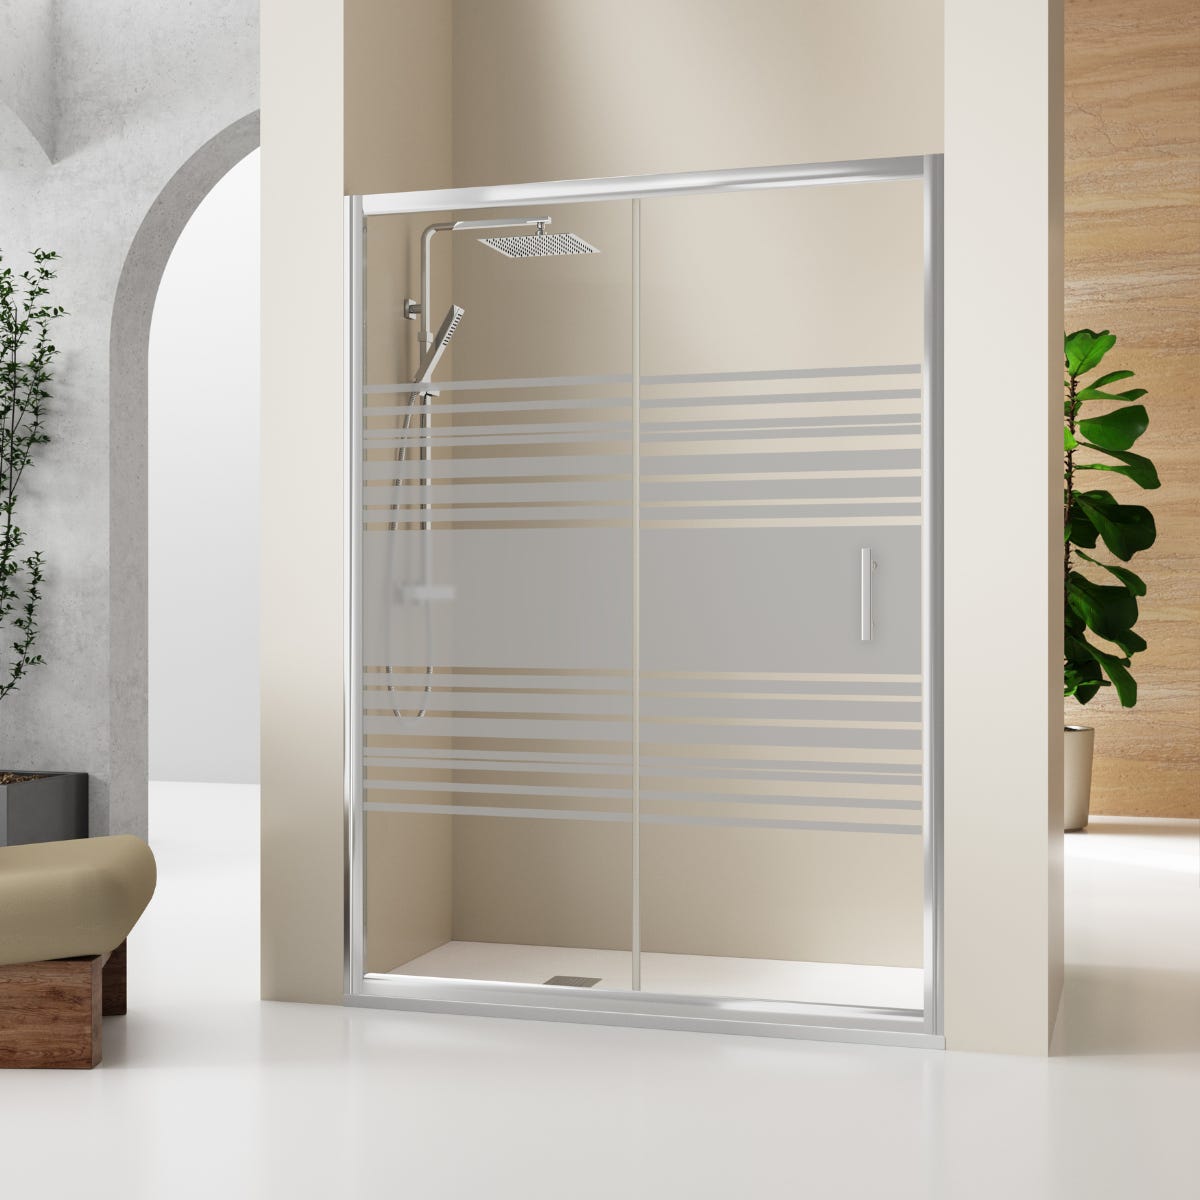 Mampara de ducha Frontal 1 fijo + 1 puerta corredera. Transparente